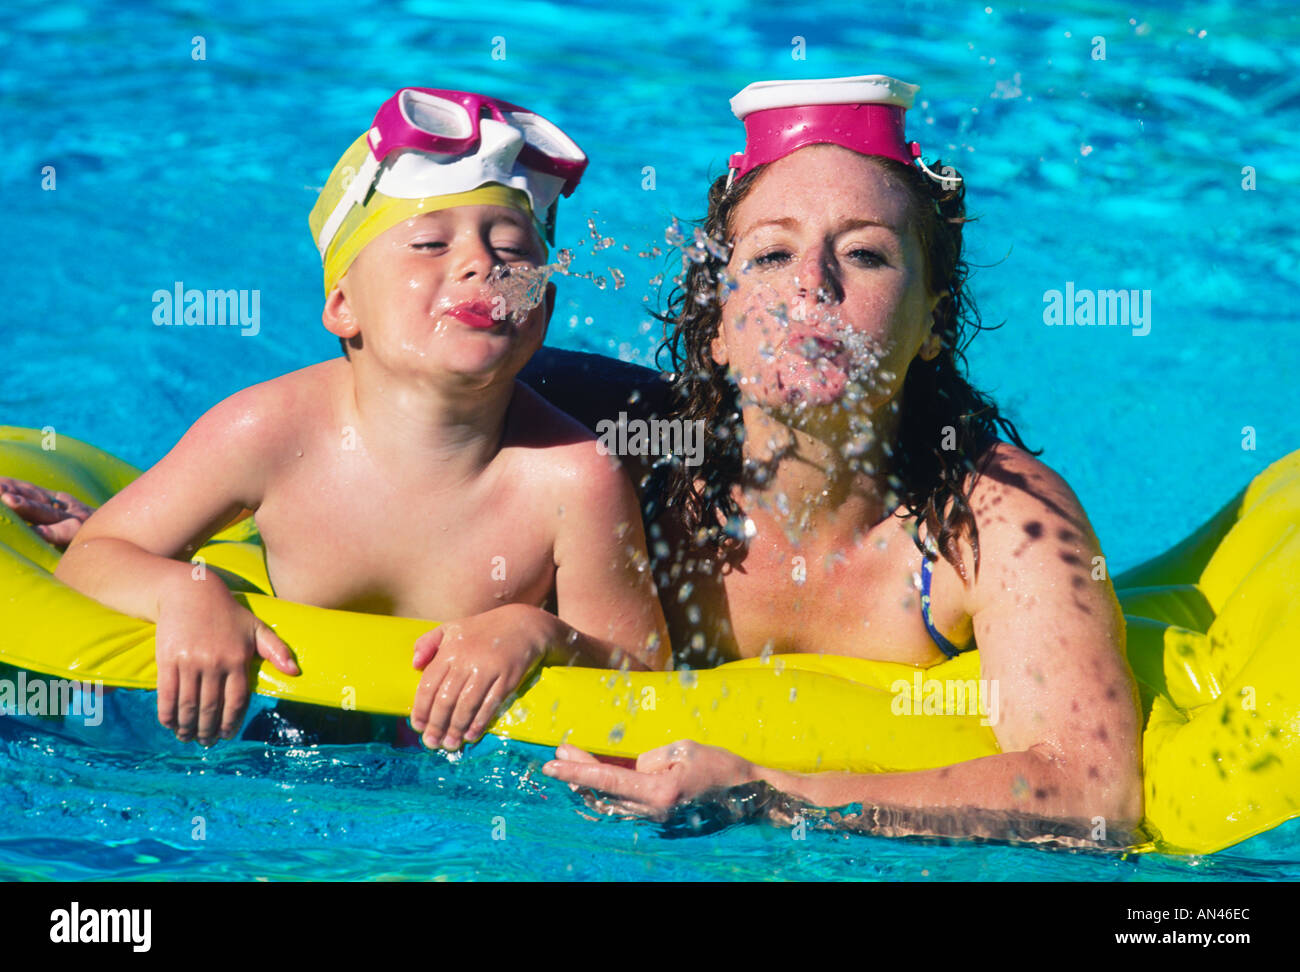 Mère et fils jouant dans la piscine Banque D'Images